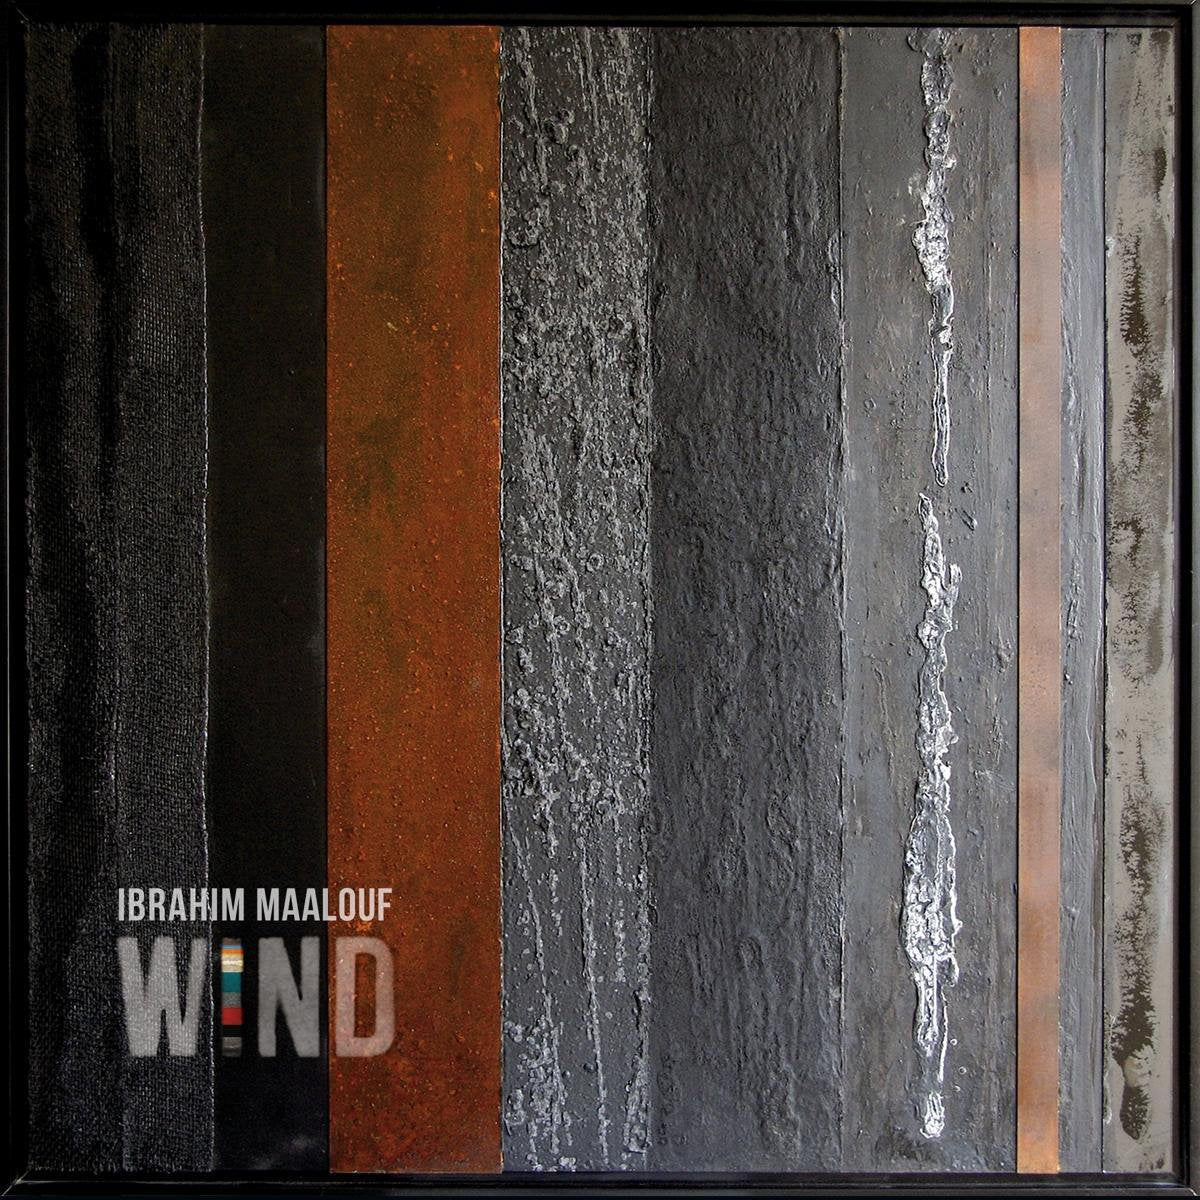 Ibrahim Maalouf - Wind |  Vinyl LP | Ibrahim Maalouf - Wind (2 LPs) | Records on Vinyl